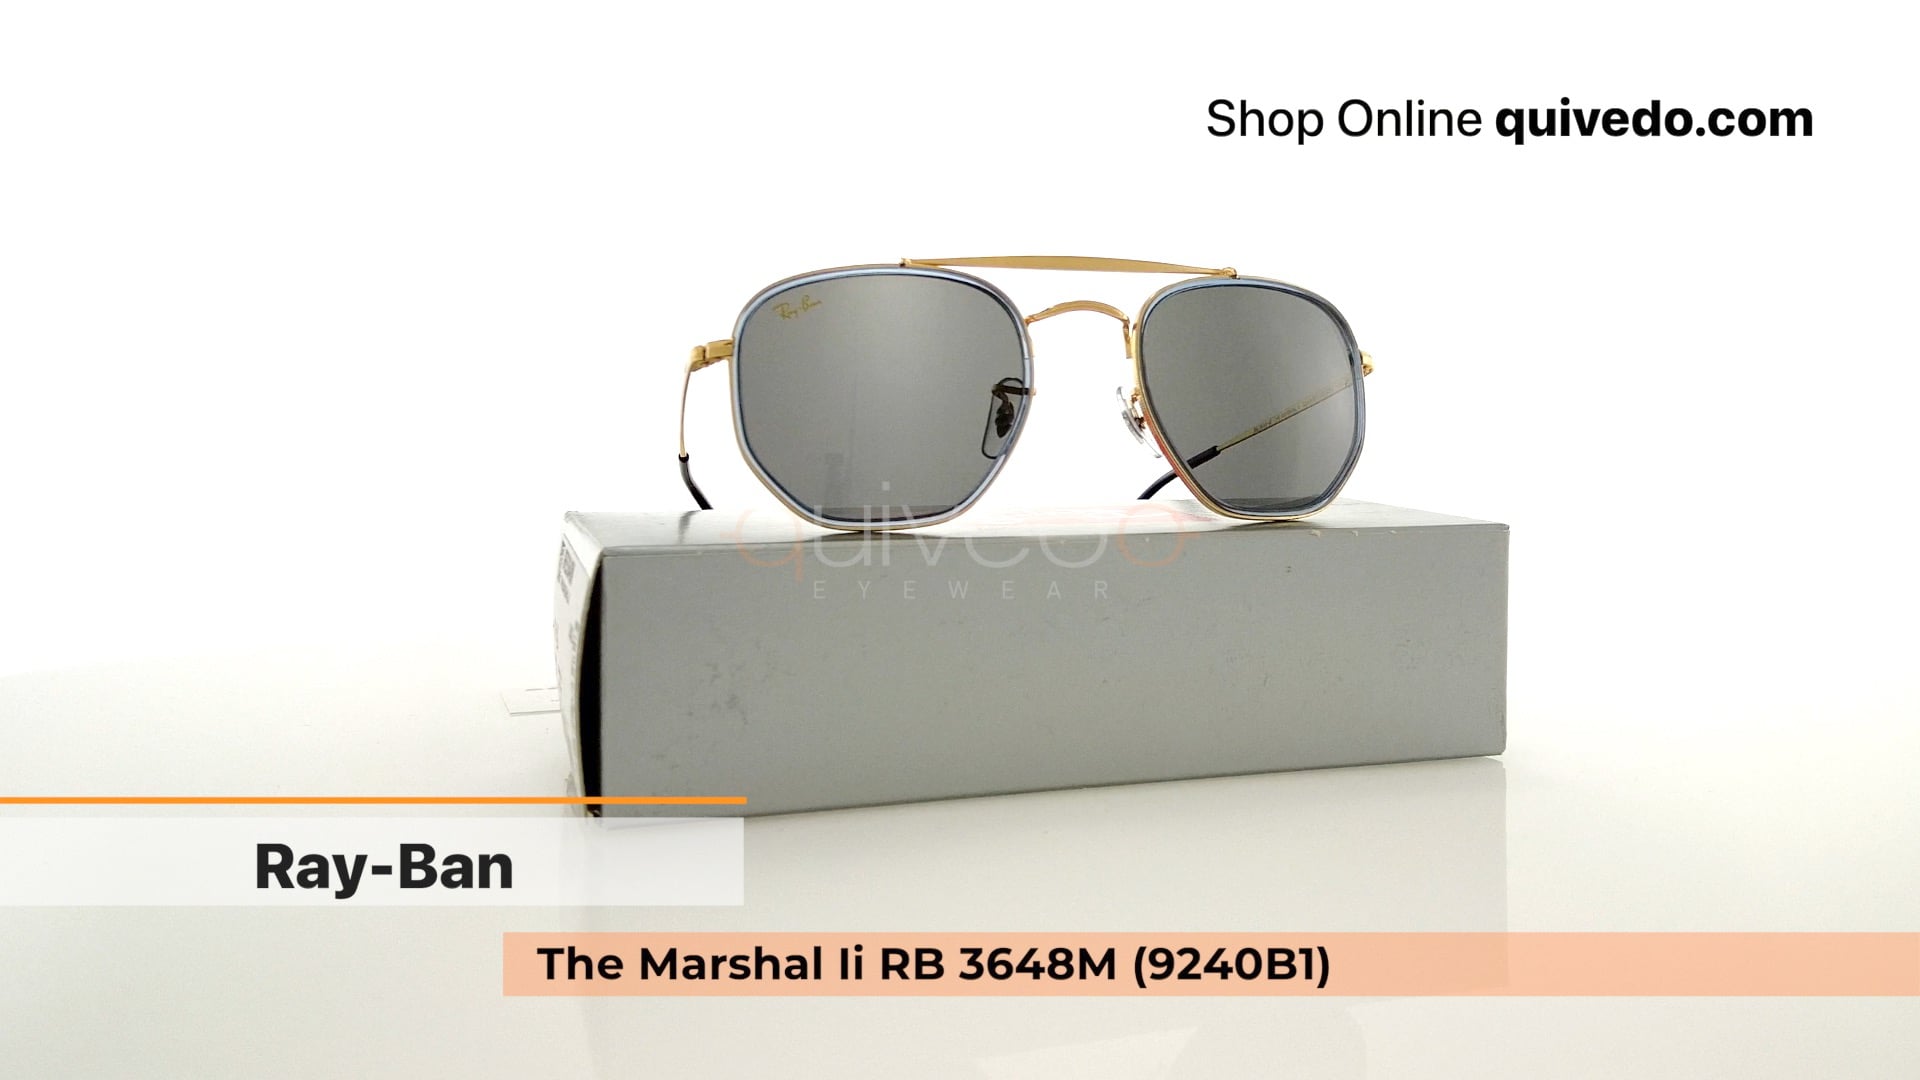 Ray-Ban The Marshal Ii RB 3648M (9240B1)